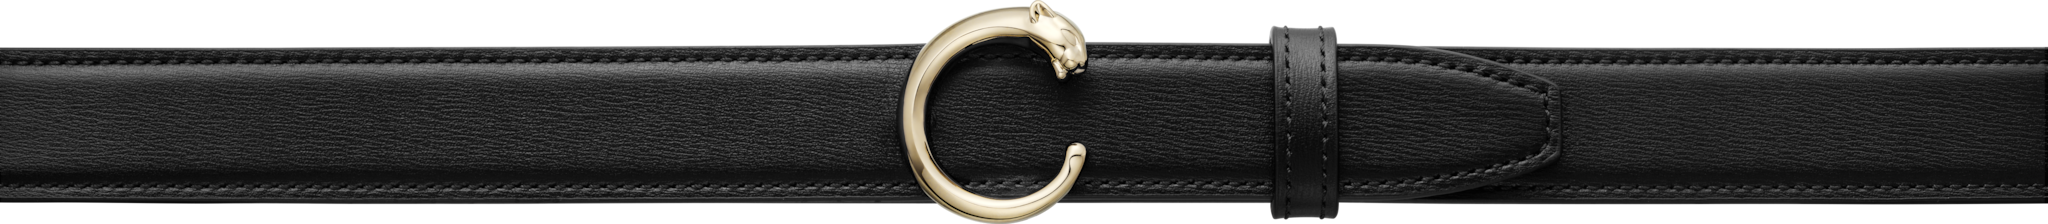 Cinturón Panthère de CartierPiel de ternera negra, hebilla acabado dorado